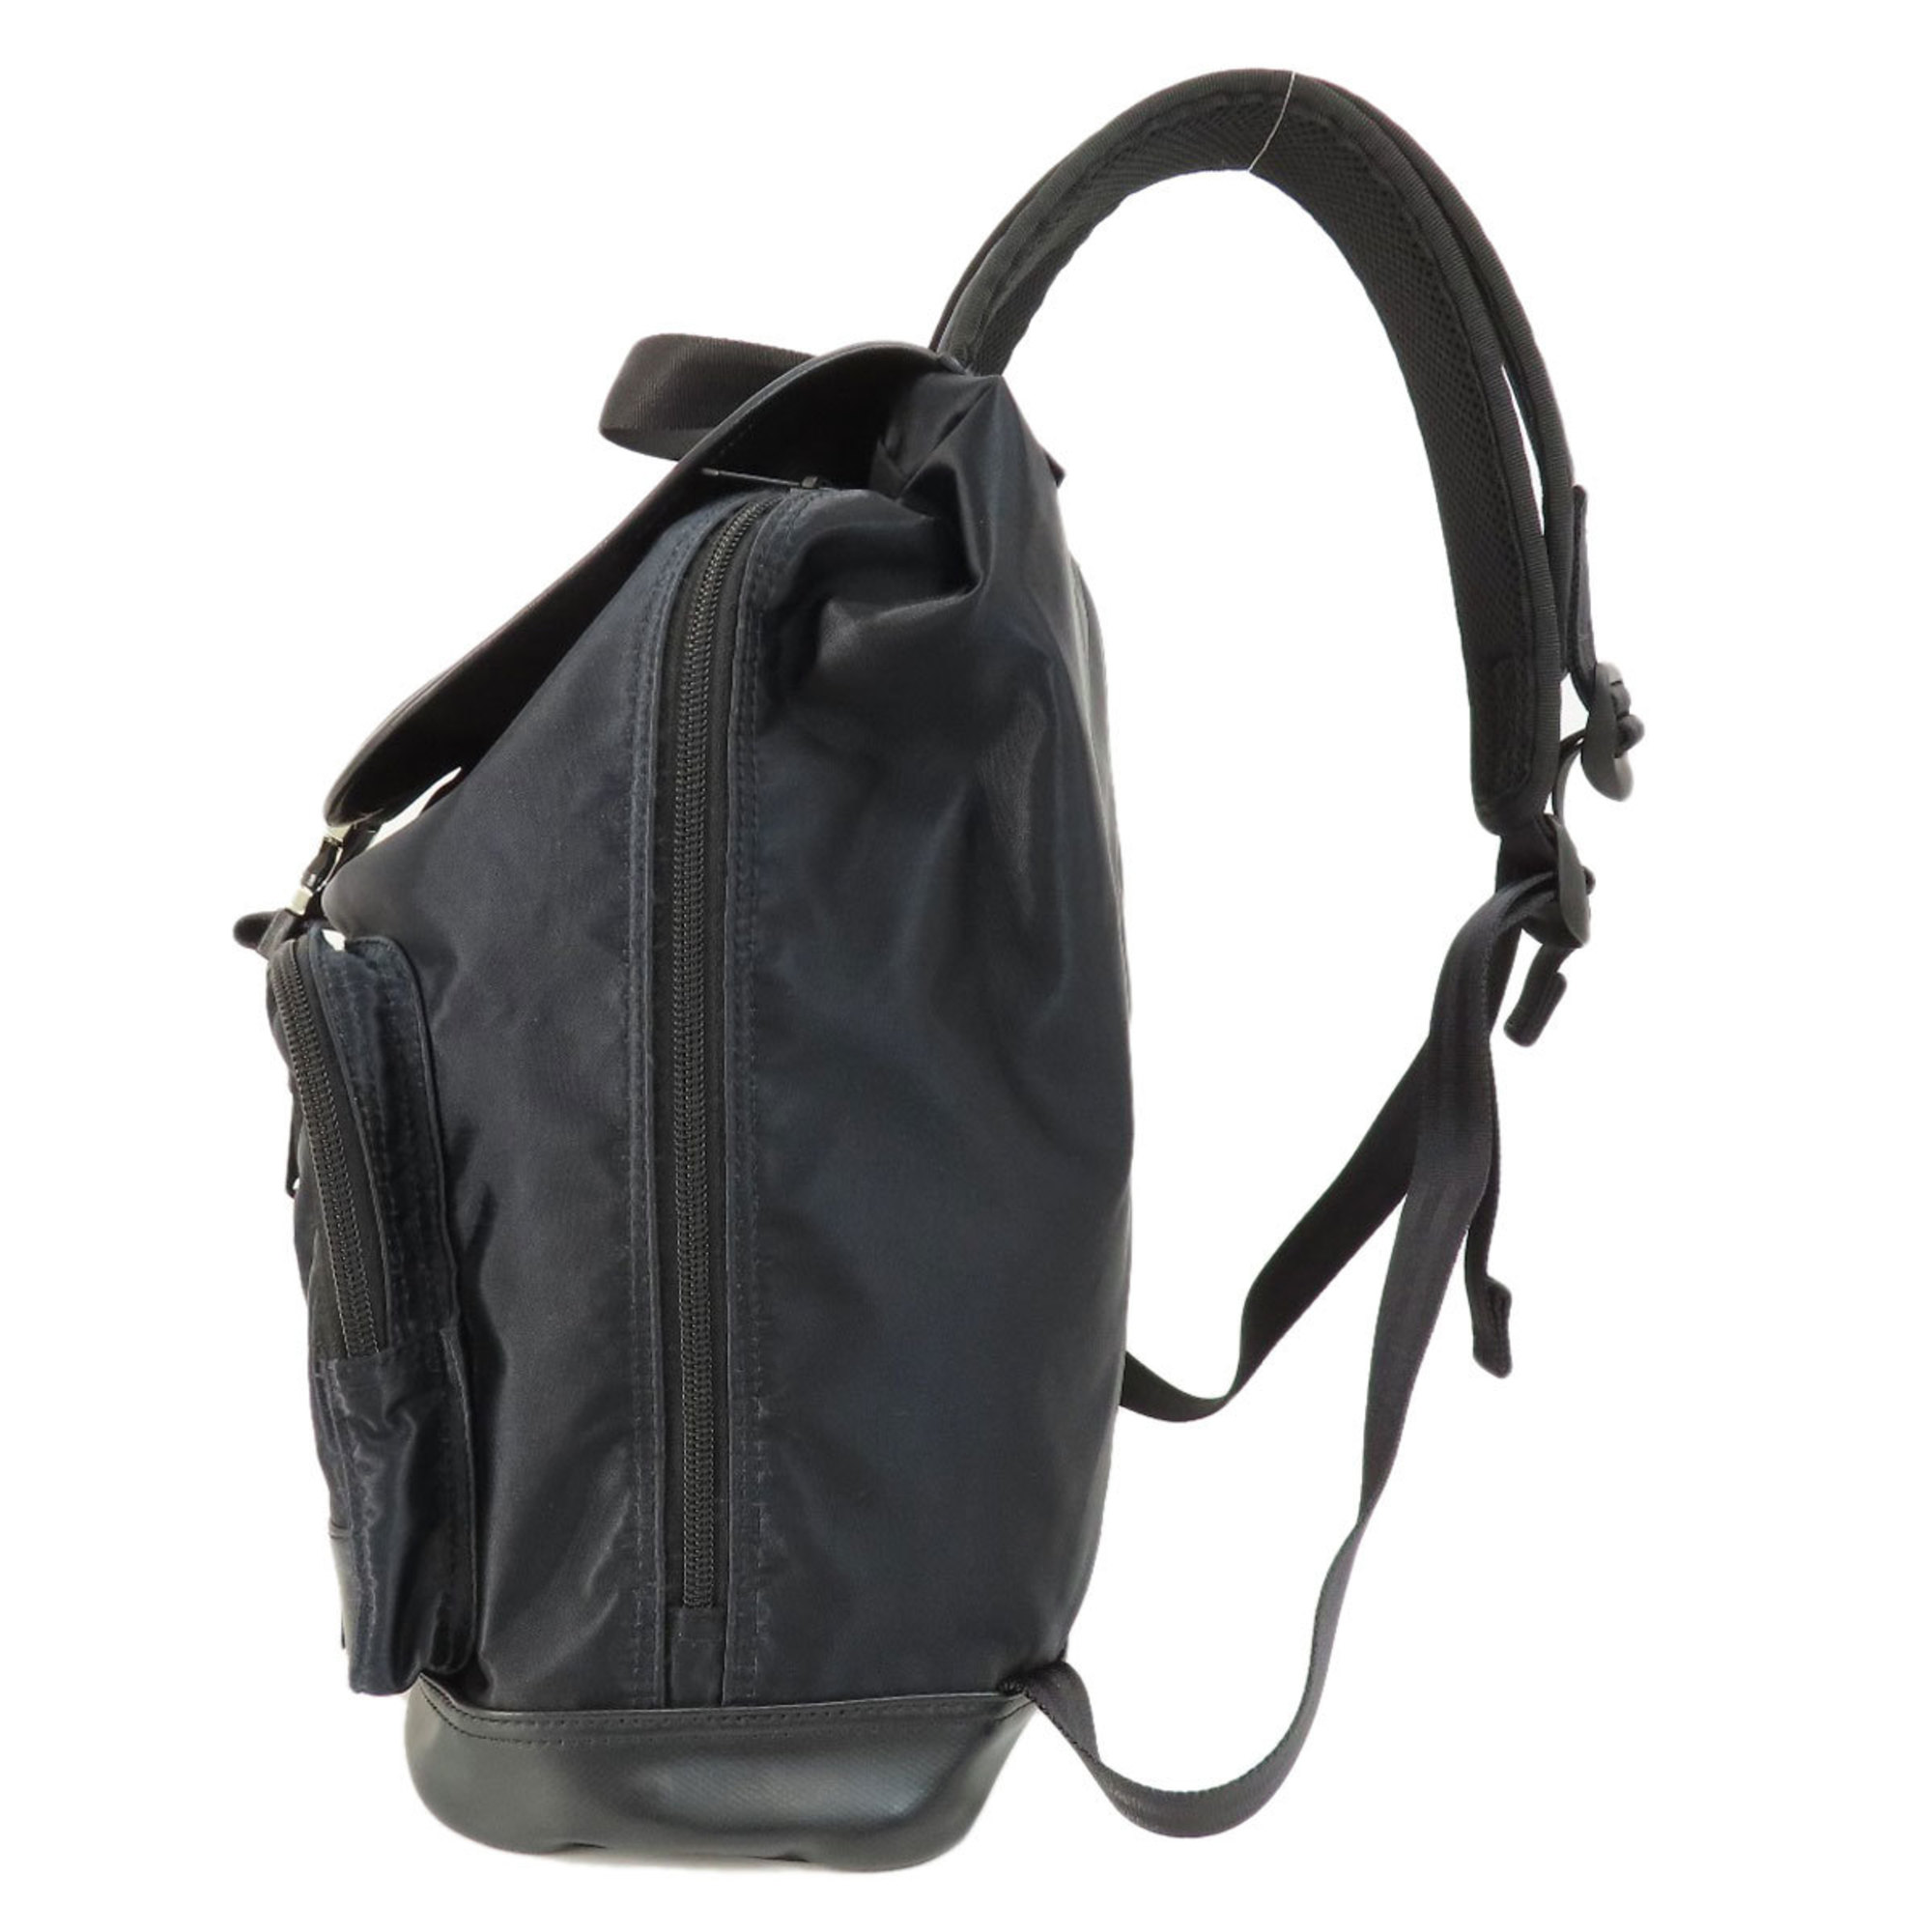 PORTER Backpacks and Daypacks, Nylon Material, Women's,